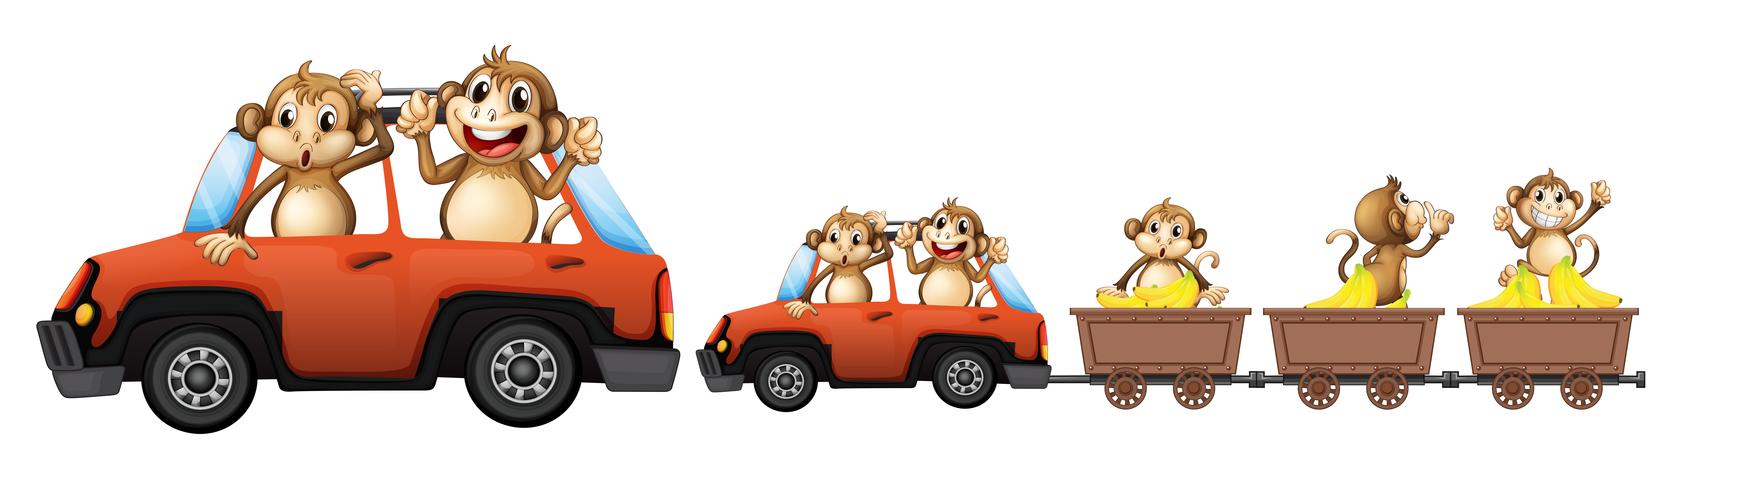 Famille de singe sur la voiture vecteur